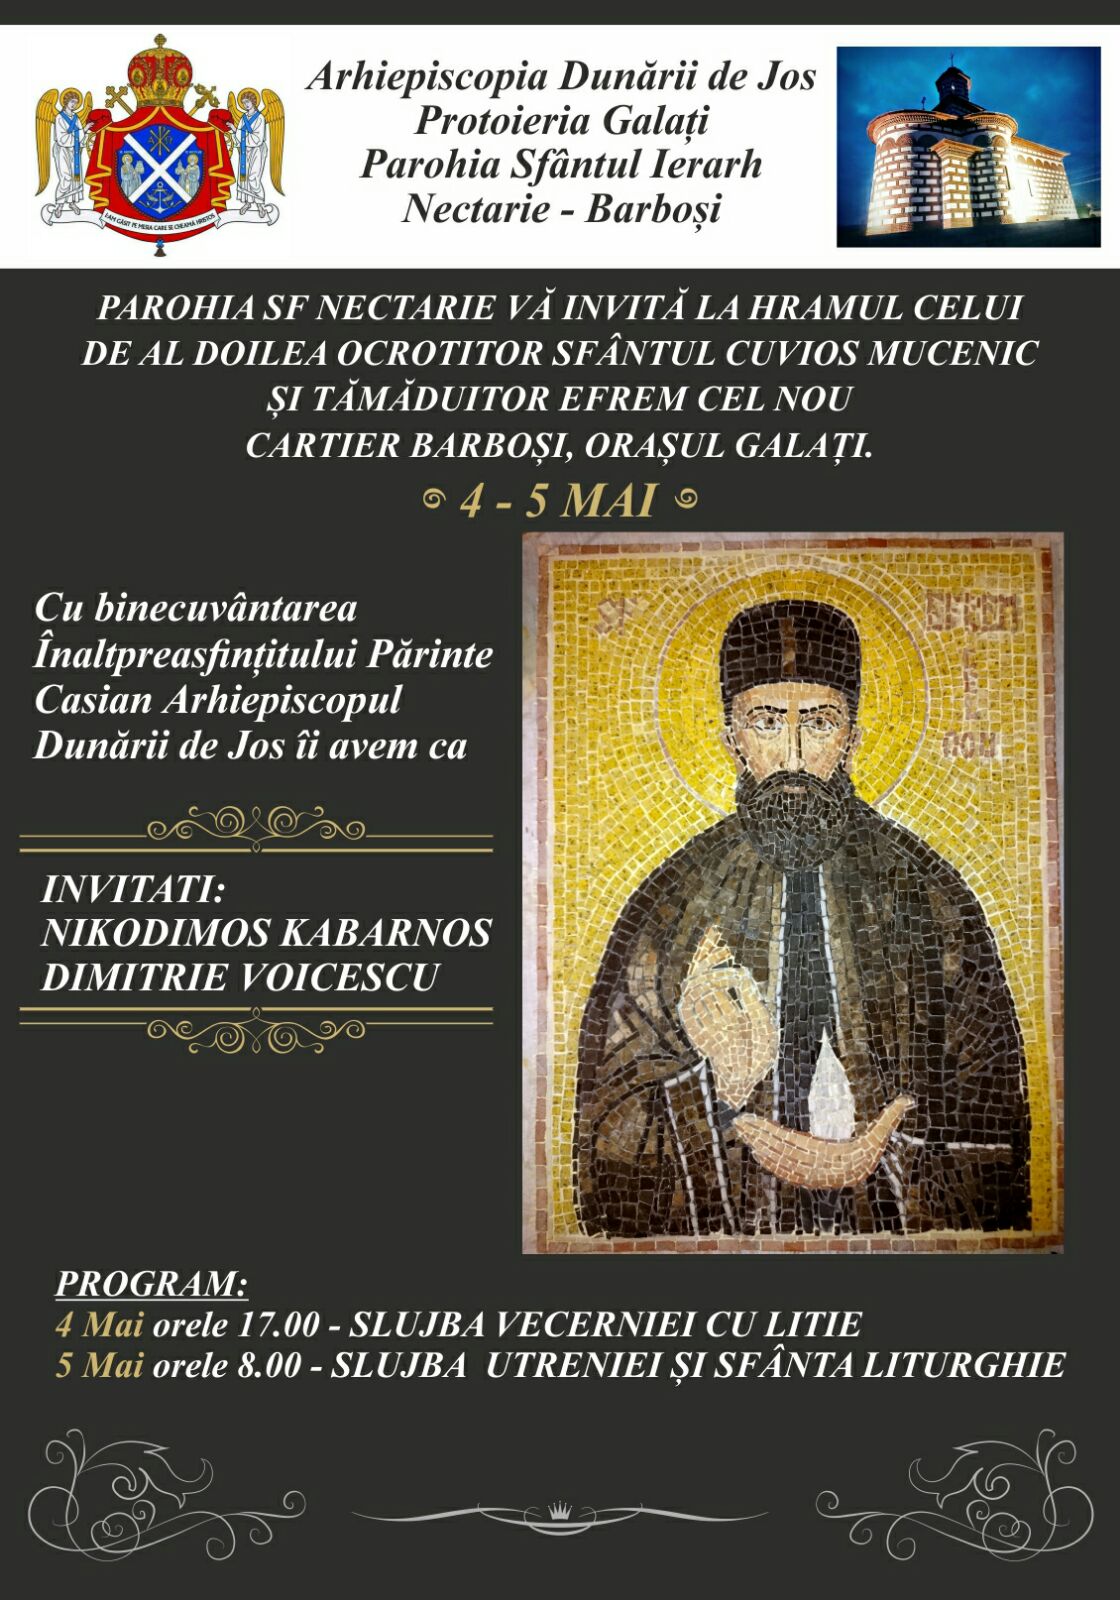 Protopsaltul Nikodimos Kabarnos cântă în Galați la Parohia Sf. Nectarie